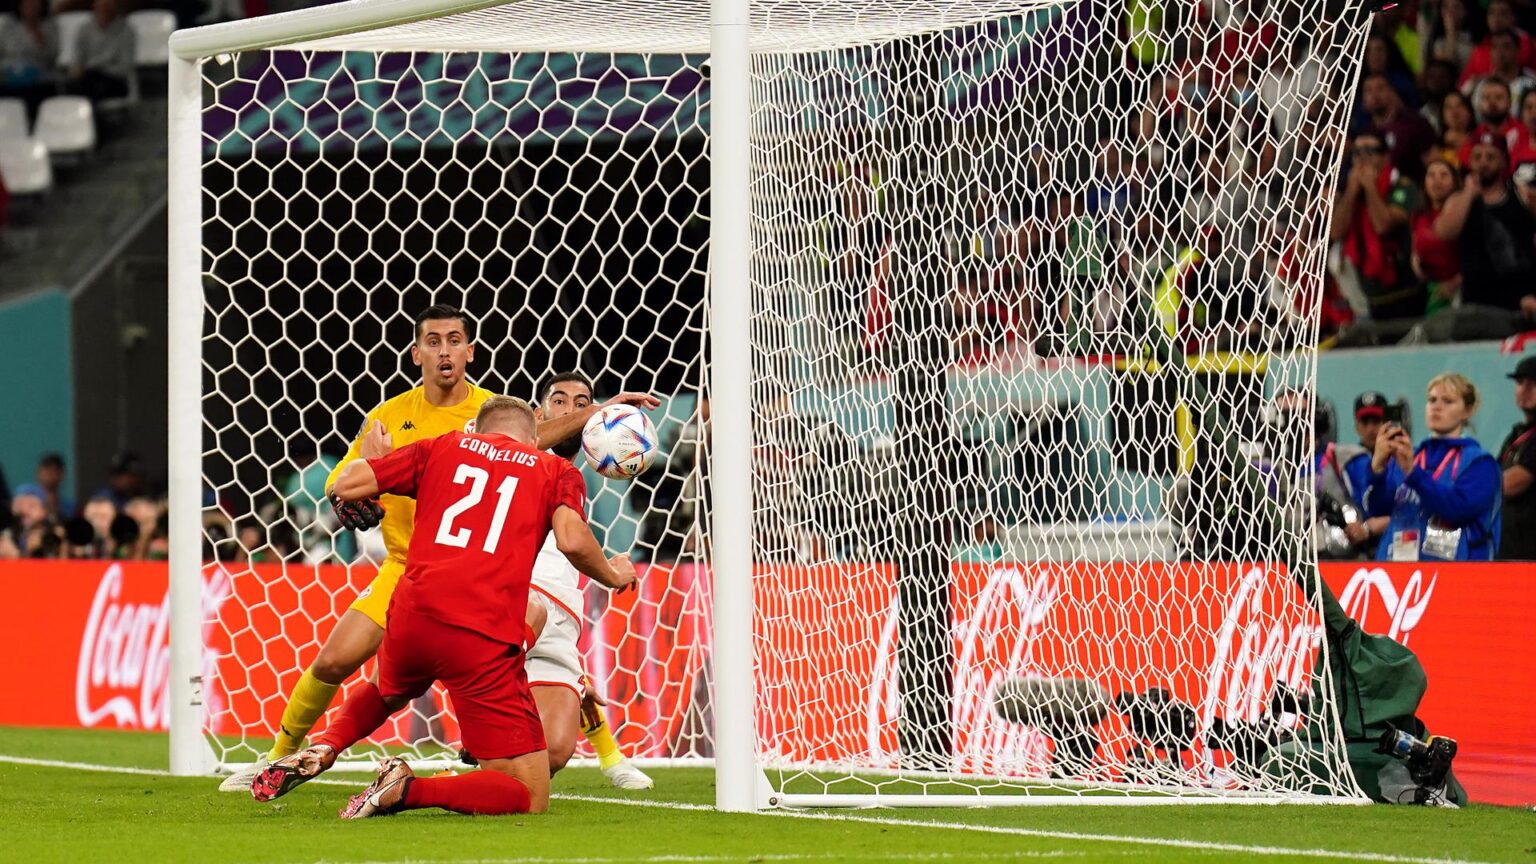 Dinamarca y Túnez firman el primer empate sin goles del Mundial de Qatar